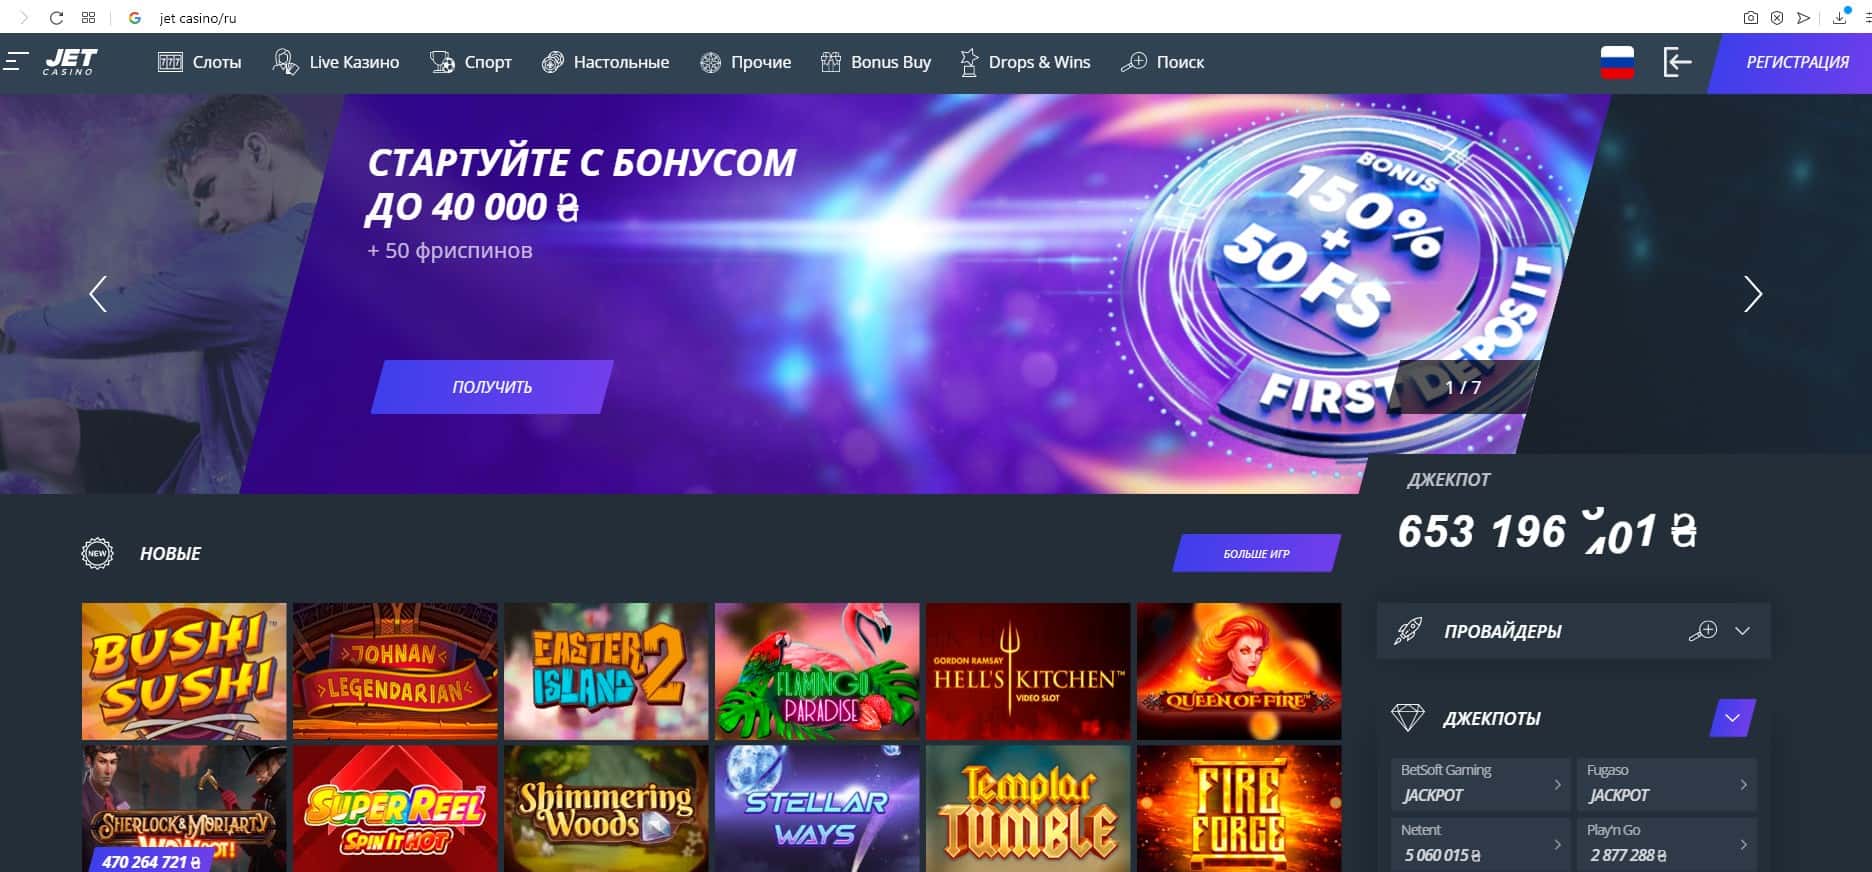 jet casino официальный сайт скачать бесплатно русская версия